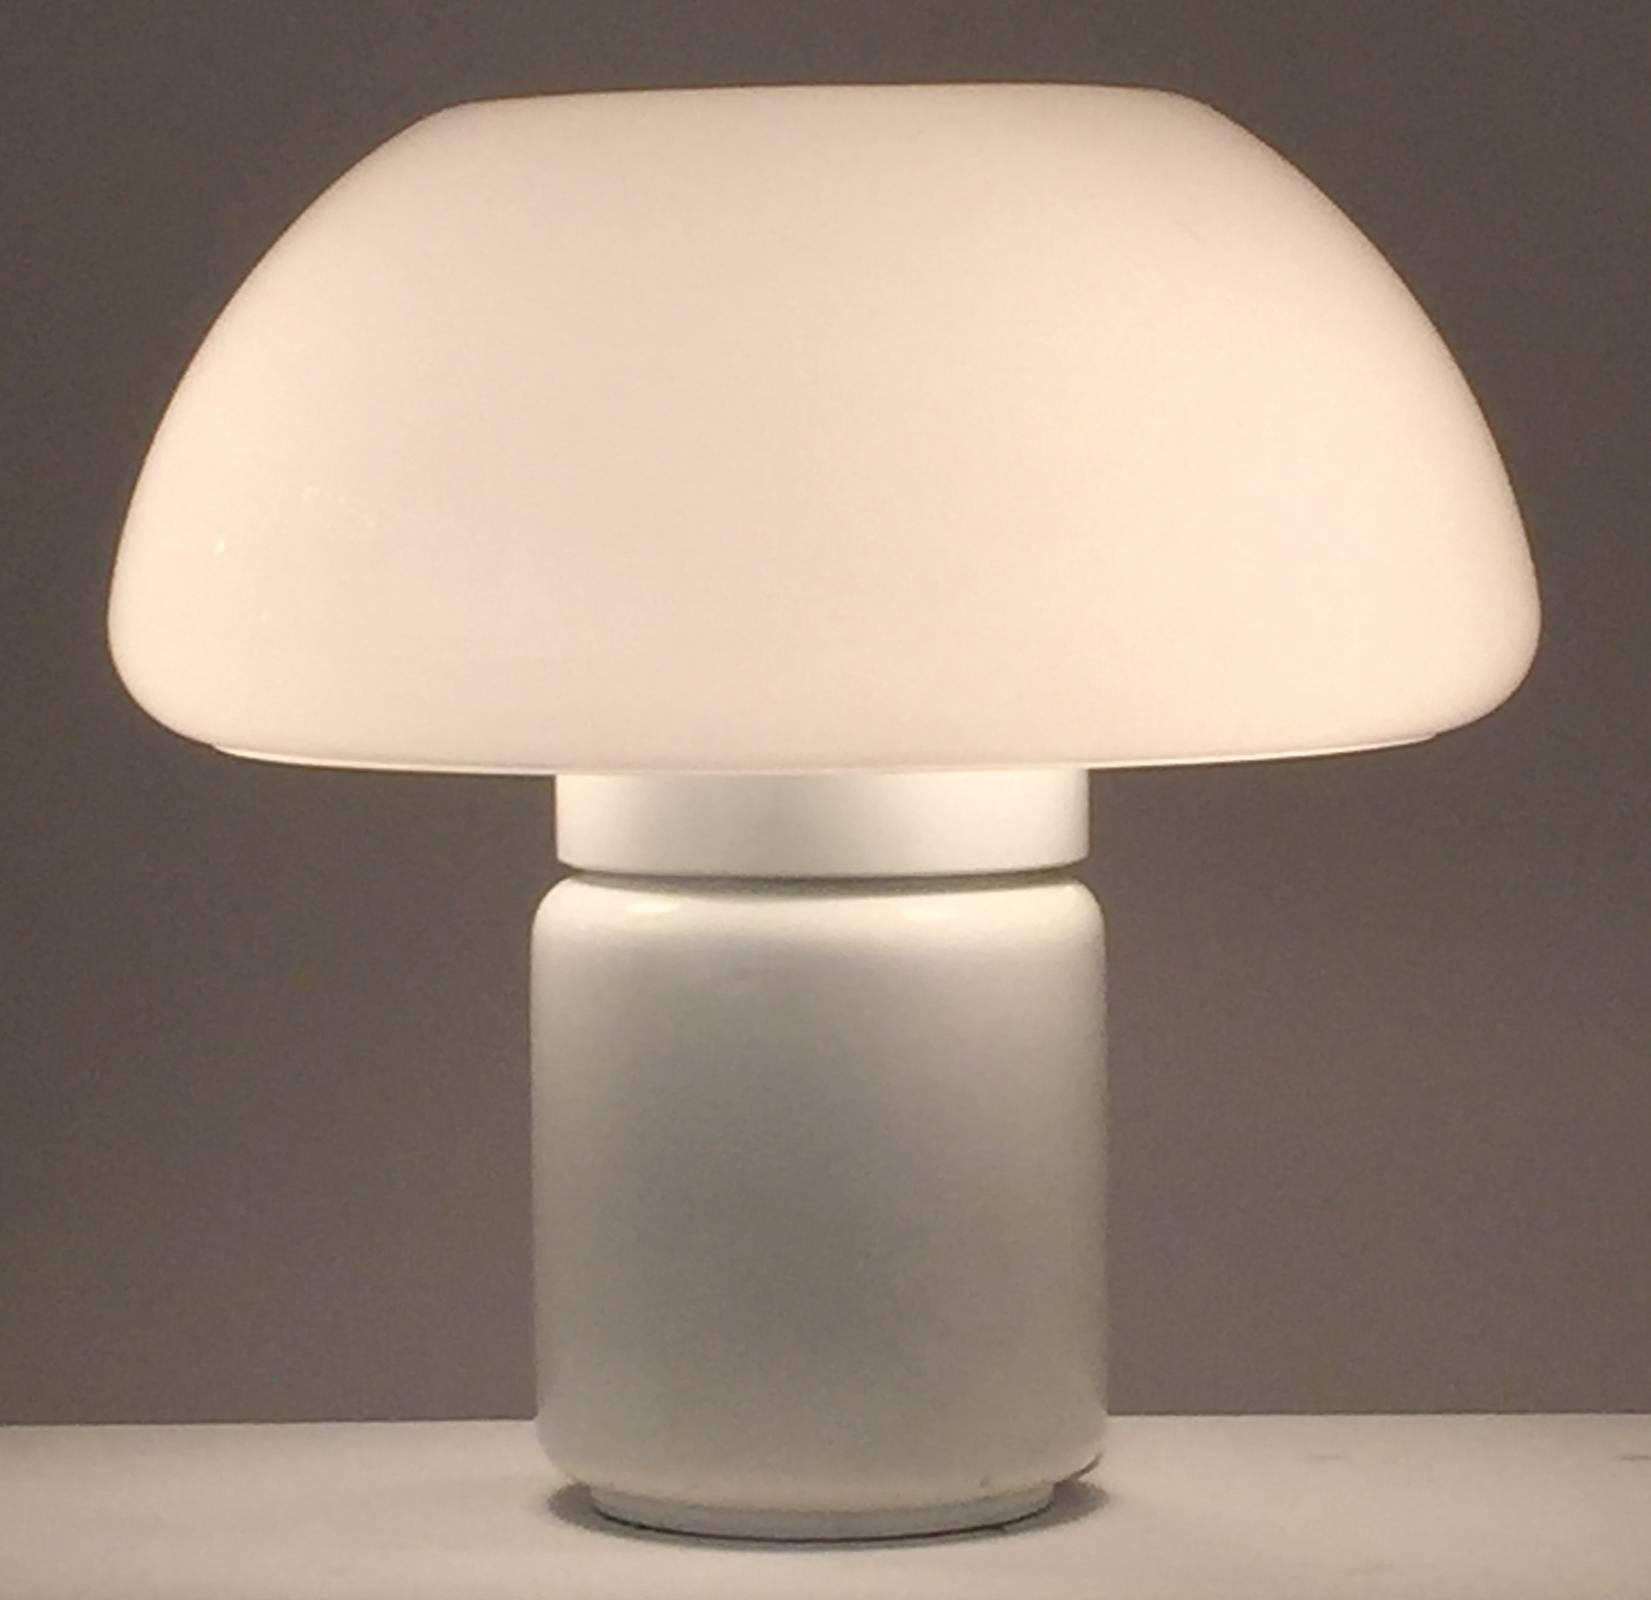 Elio Martinelli mushroom lamp, Martinelli Luc 1968, Italy.
White acrylic shade, white enameled metal base.